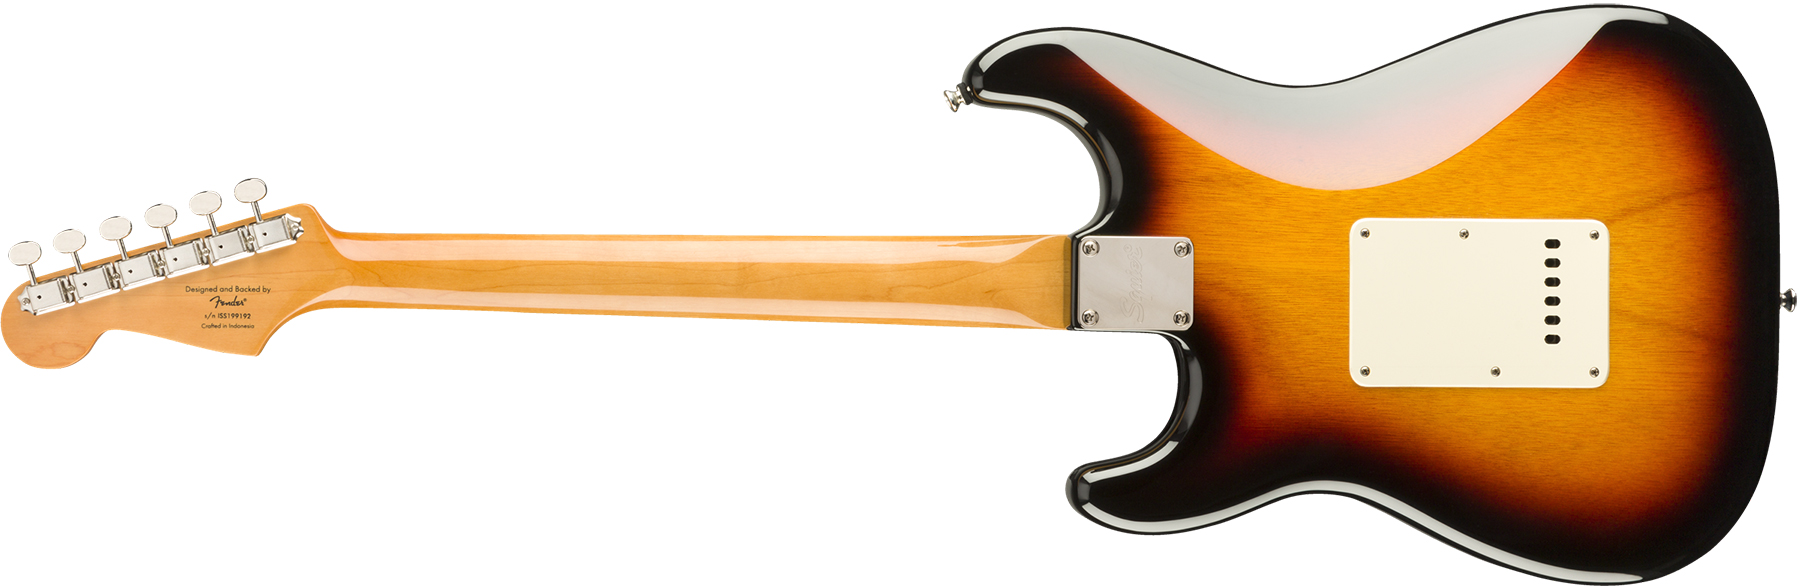 Squier Strat '60s Classic Vibe 2019 Lau 2019 - 3-color Sunburst - Str shape electric guitar - Variation 1